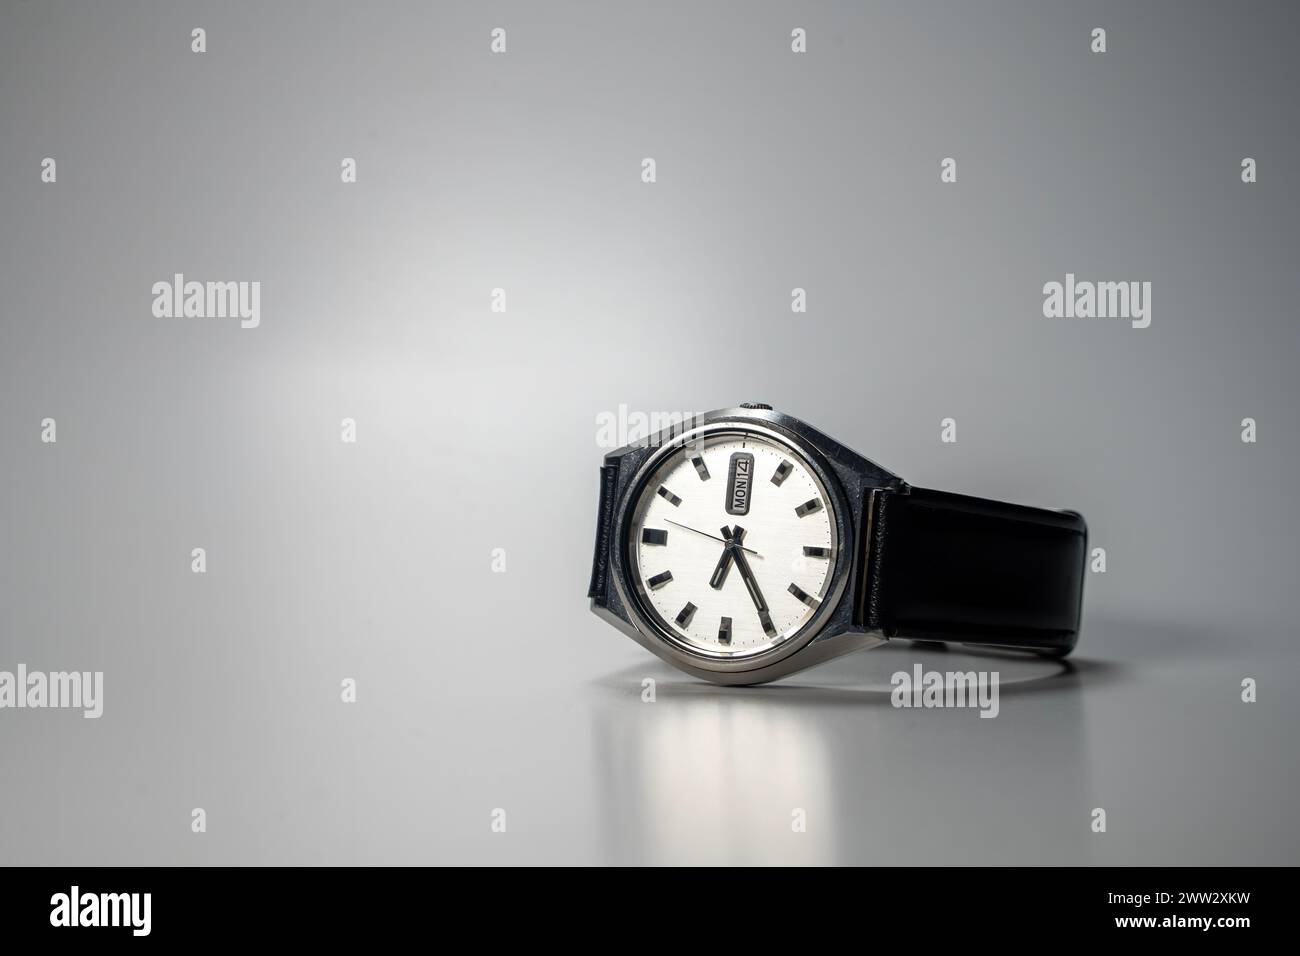 Vintage montre-bracelet automatique avec bracelet en cuir, placé sur la surface grise Banque D'Images